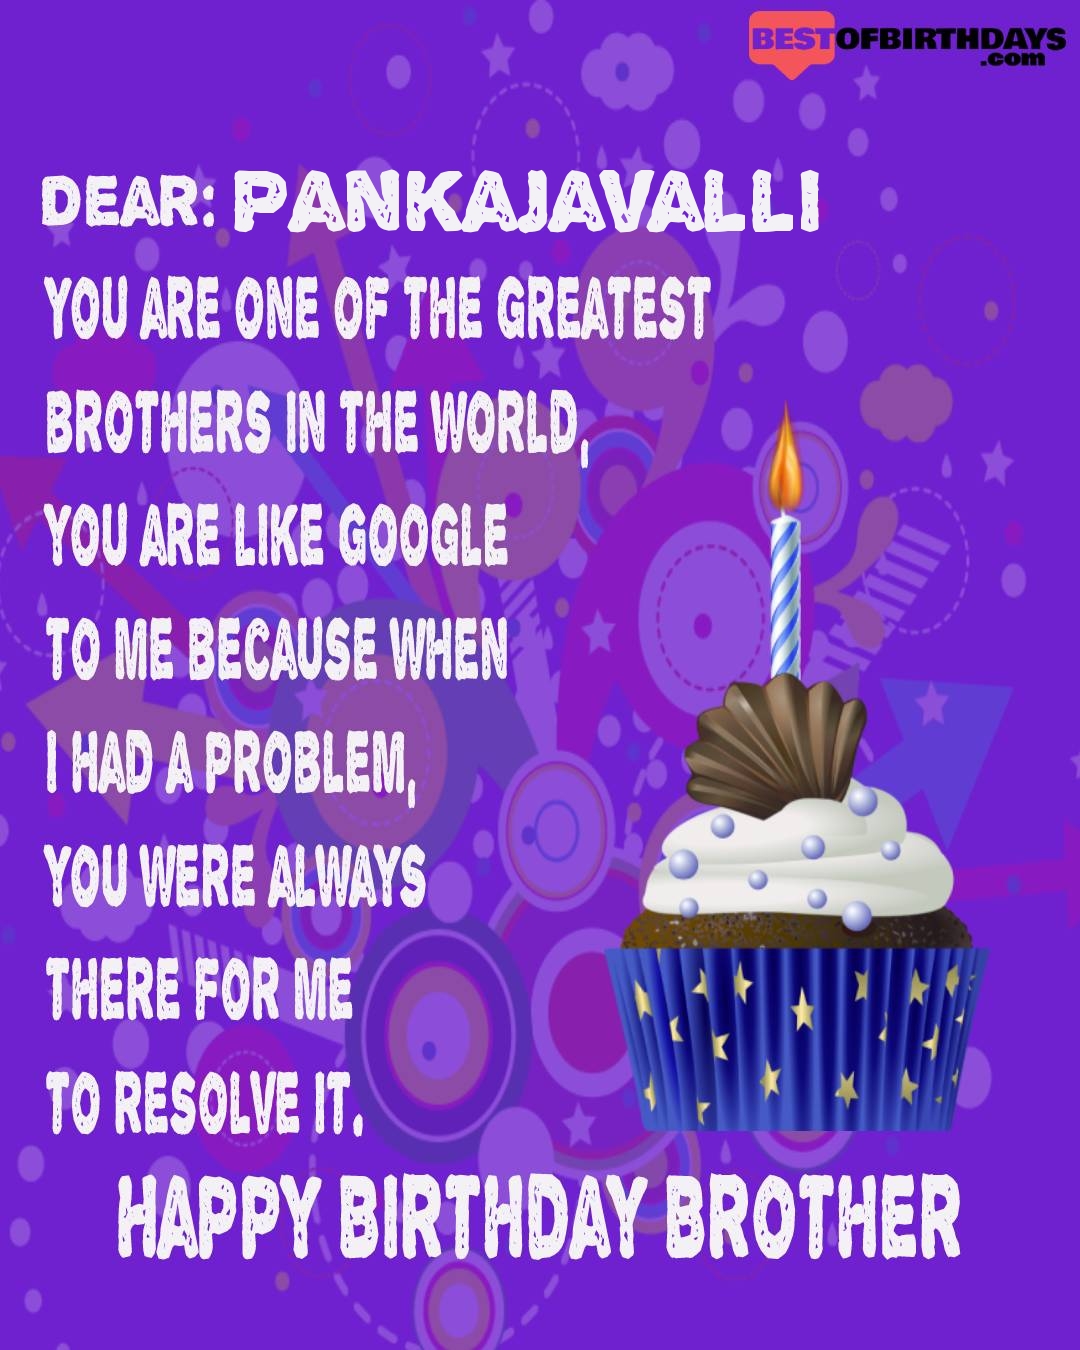 Happy birthday pankajavalli bhai brother bro